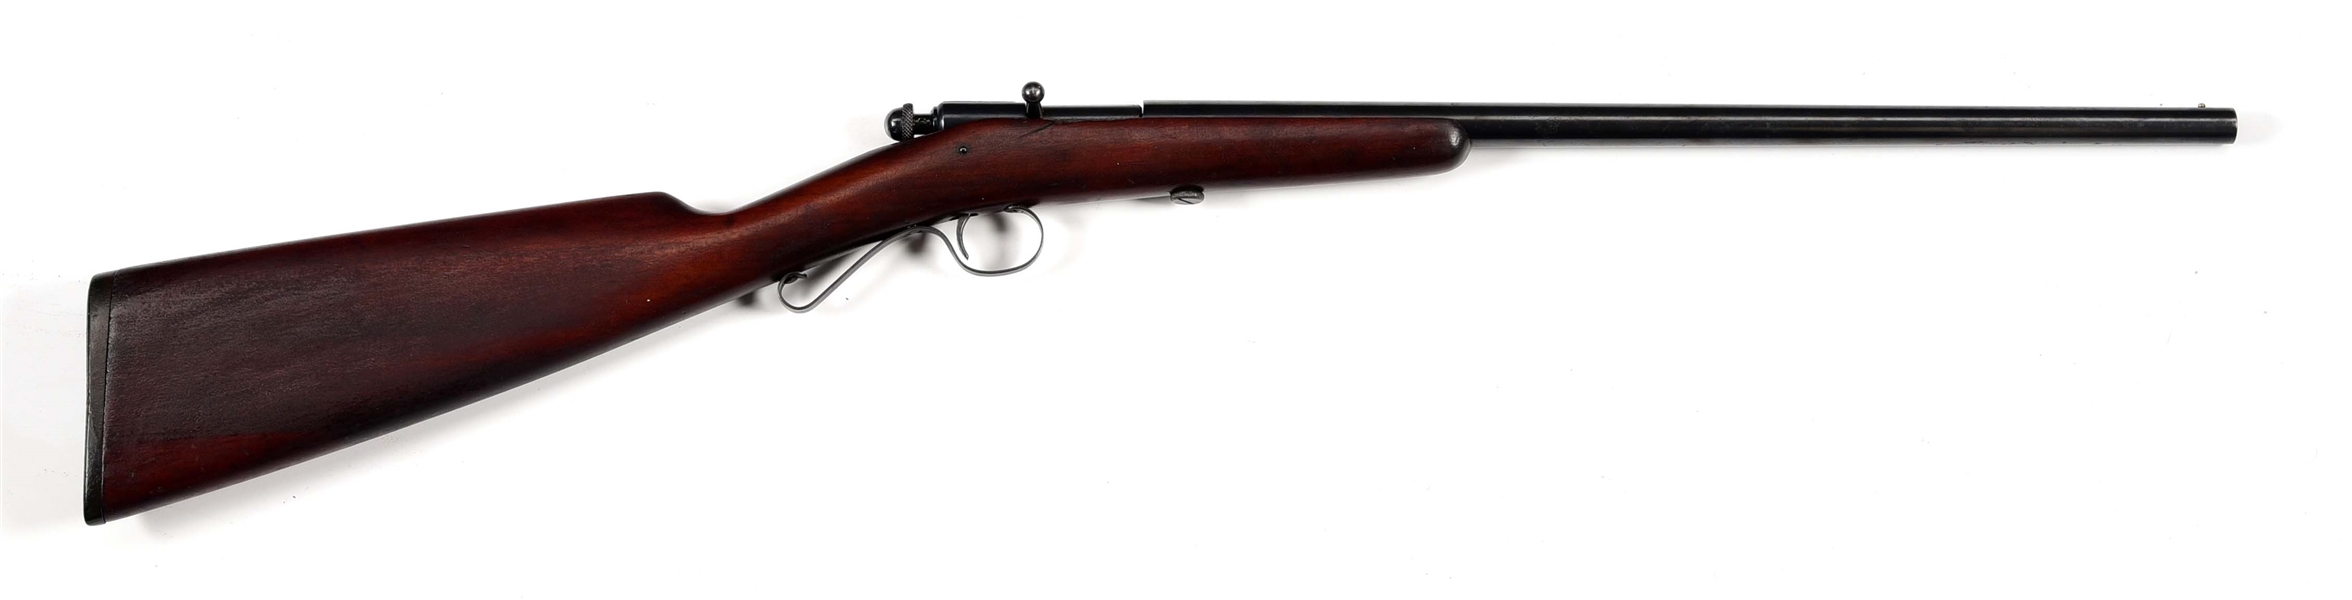 (C) WINCHESTER MODEL 36 "GARDEN GUN" 9MM BOLT ACTION SHOTGUN WITH VINTAGE AMMUNITION.